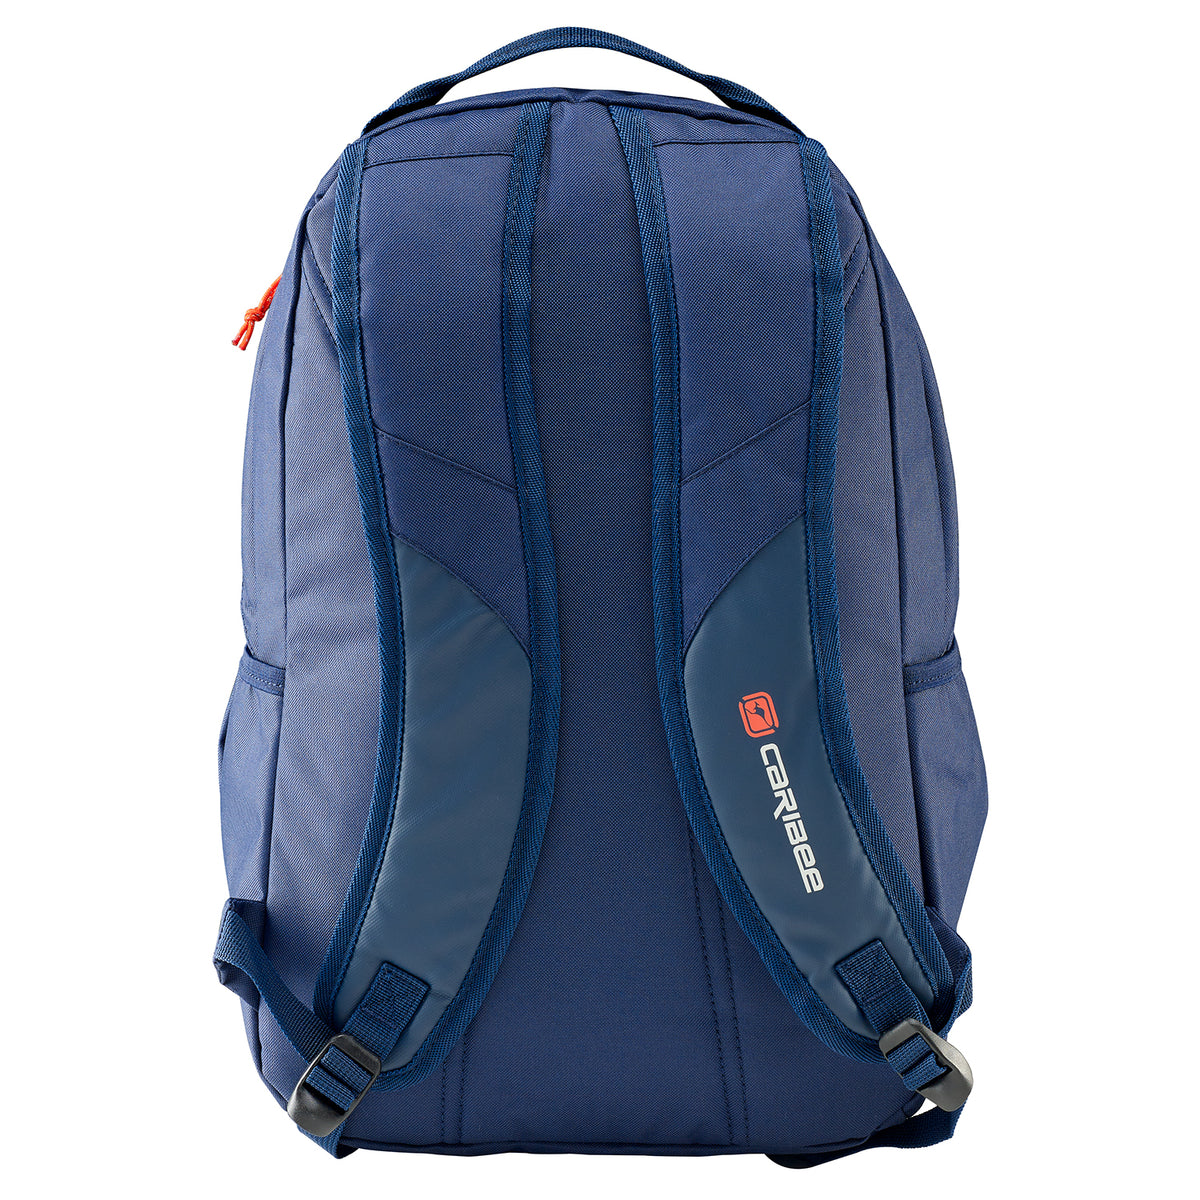 Caribee - Sierra 20lt Sports backpack - Navy/Red - 0